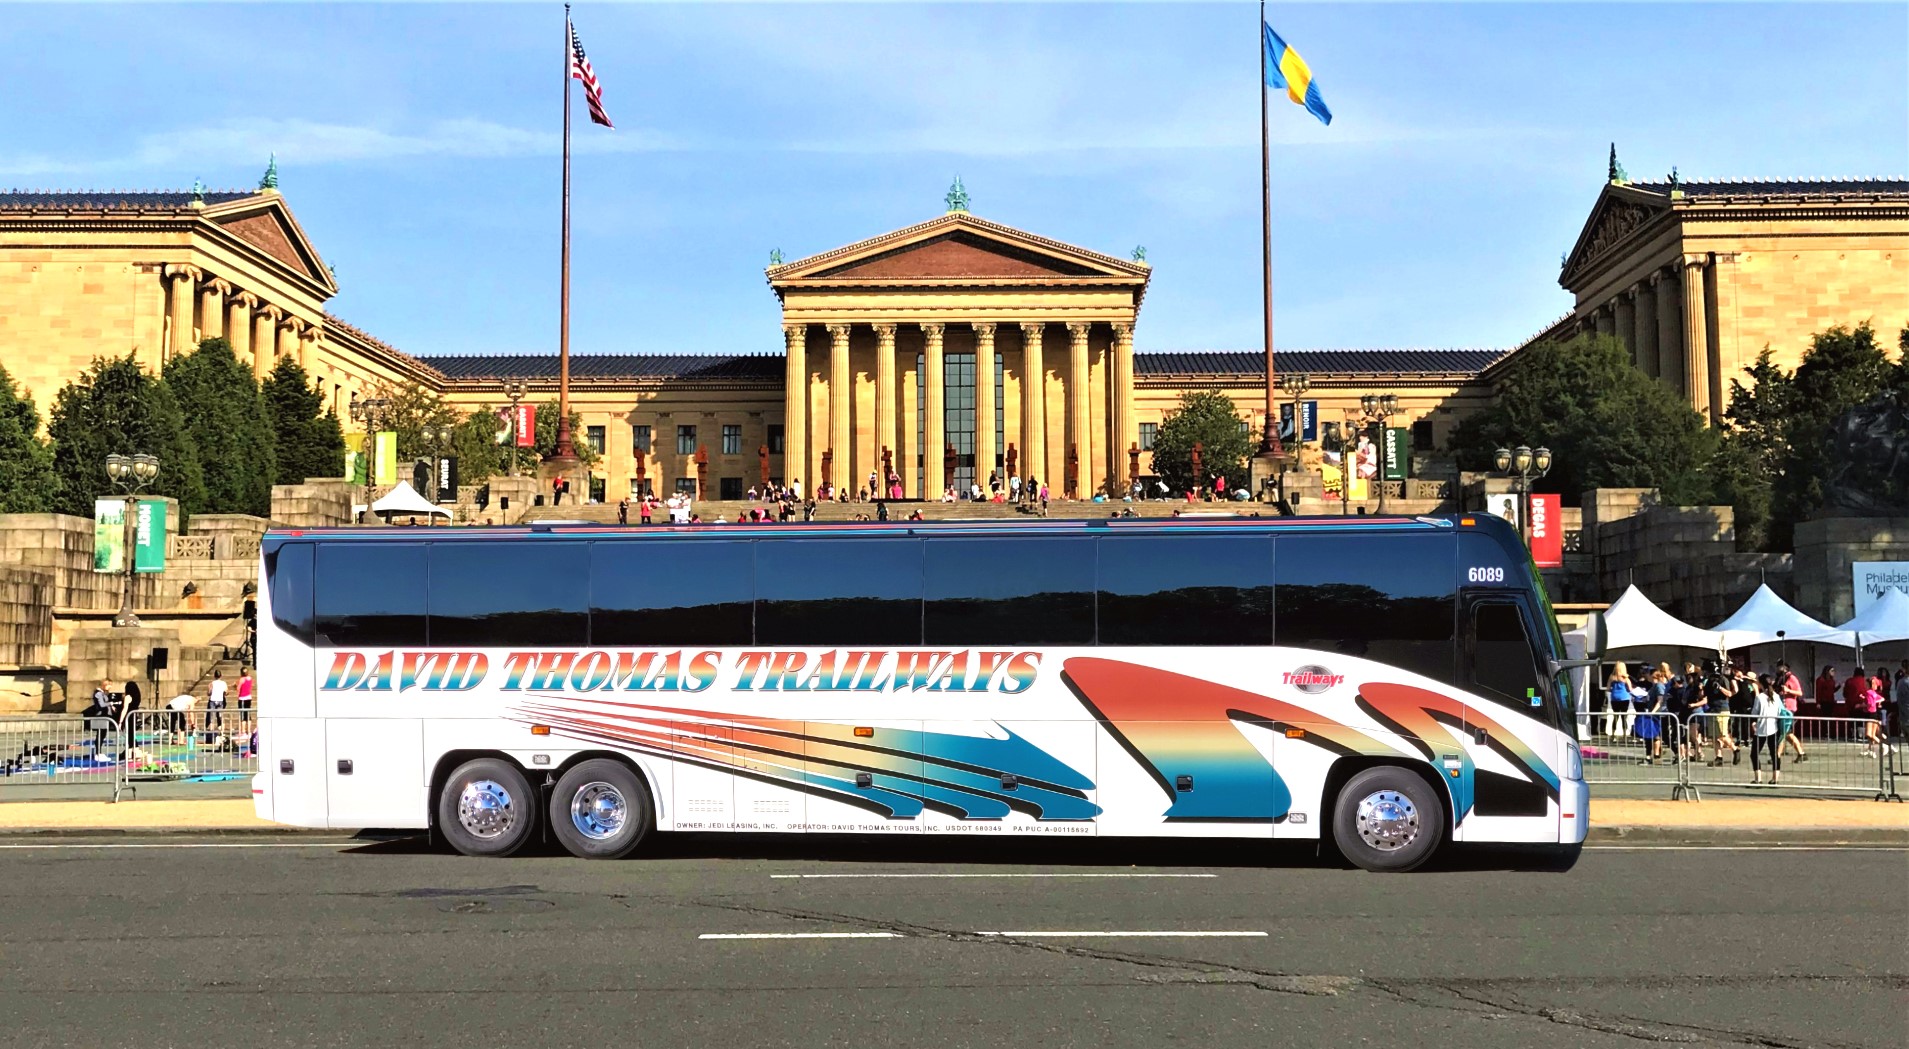 david tours buses